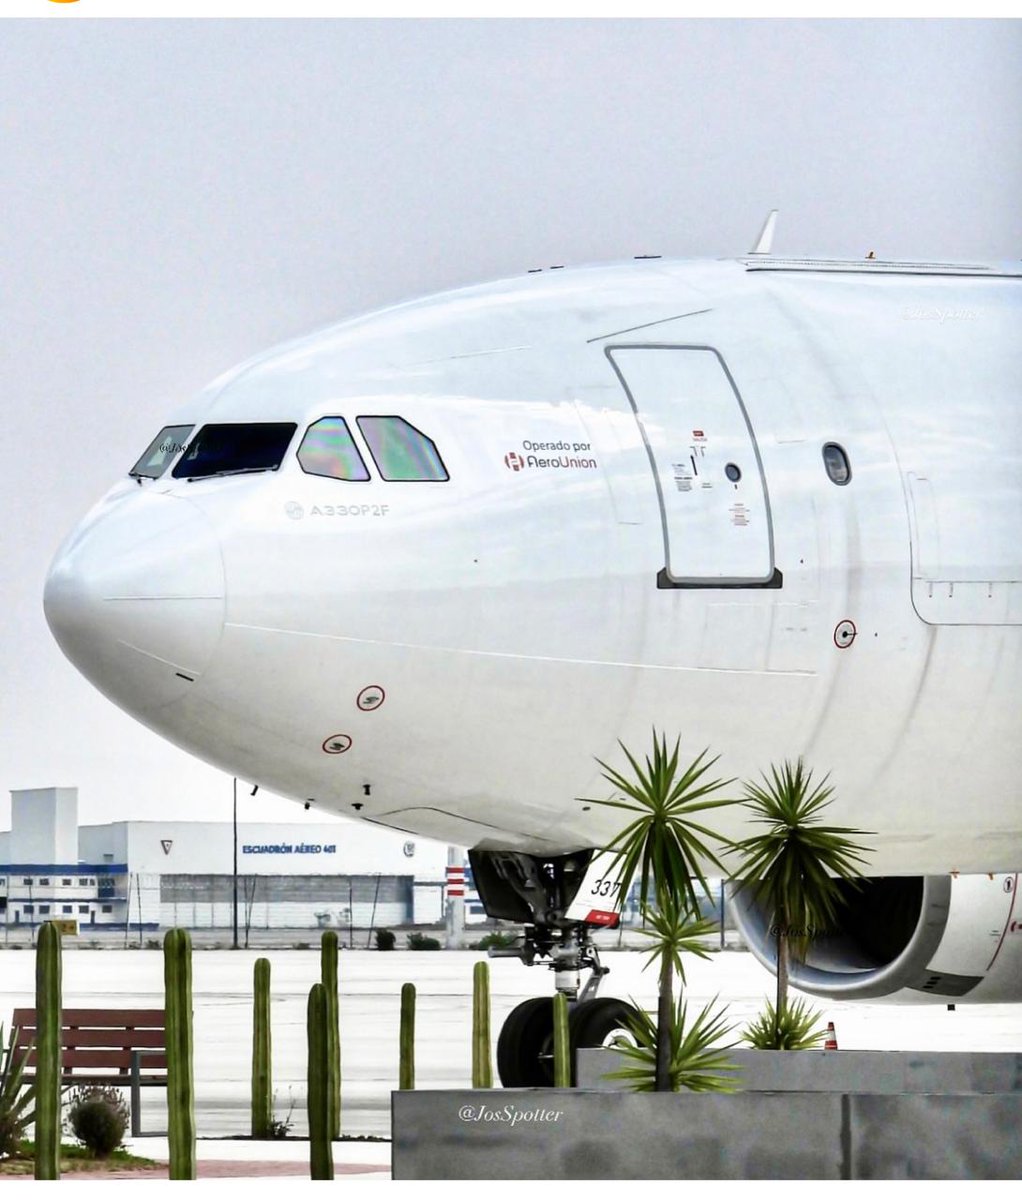 La linea de carga #Aerounion (y mi ex empresa) recibió su primer A330, con ello incrementará su capacidad de carga. Felicidades! 
Foto del buen JosSpotter